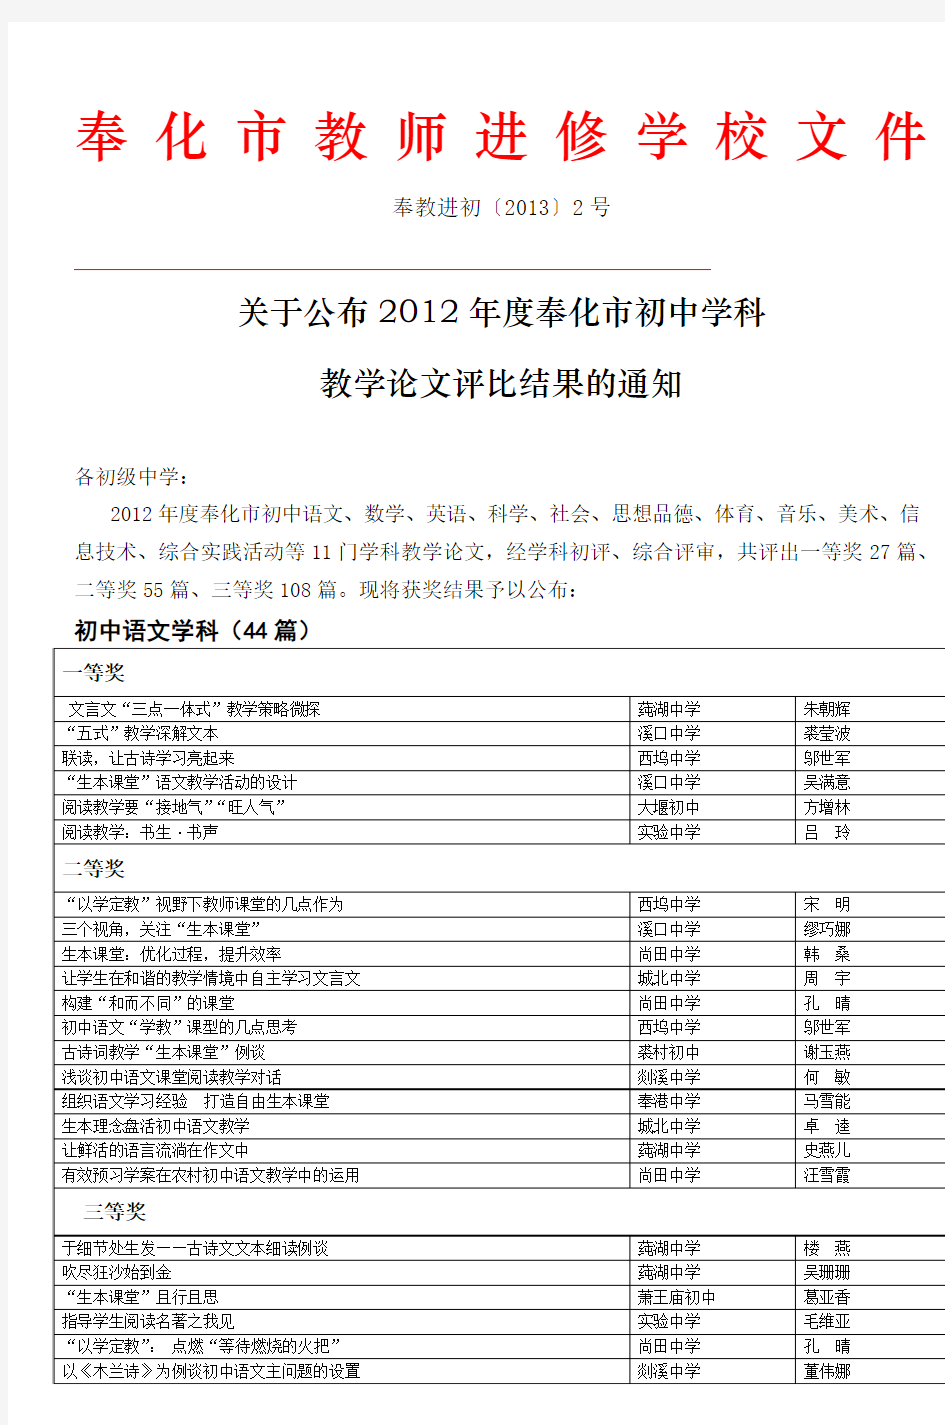 2011年初中语文教学论文评比参评篇